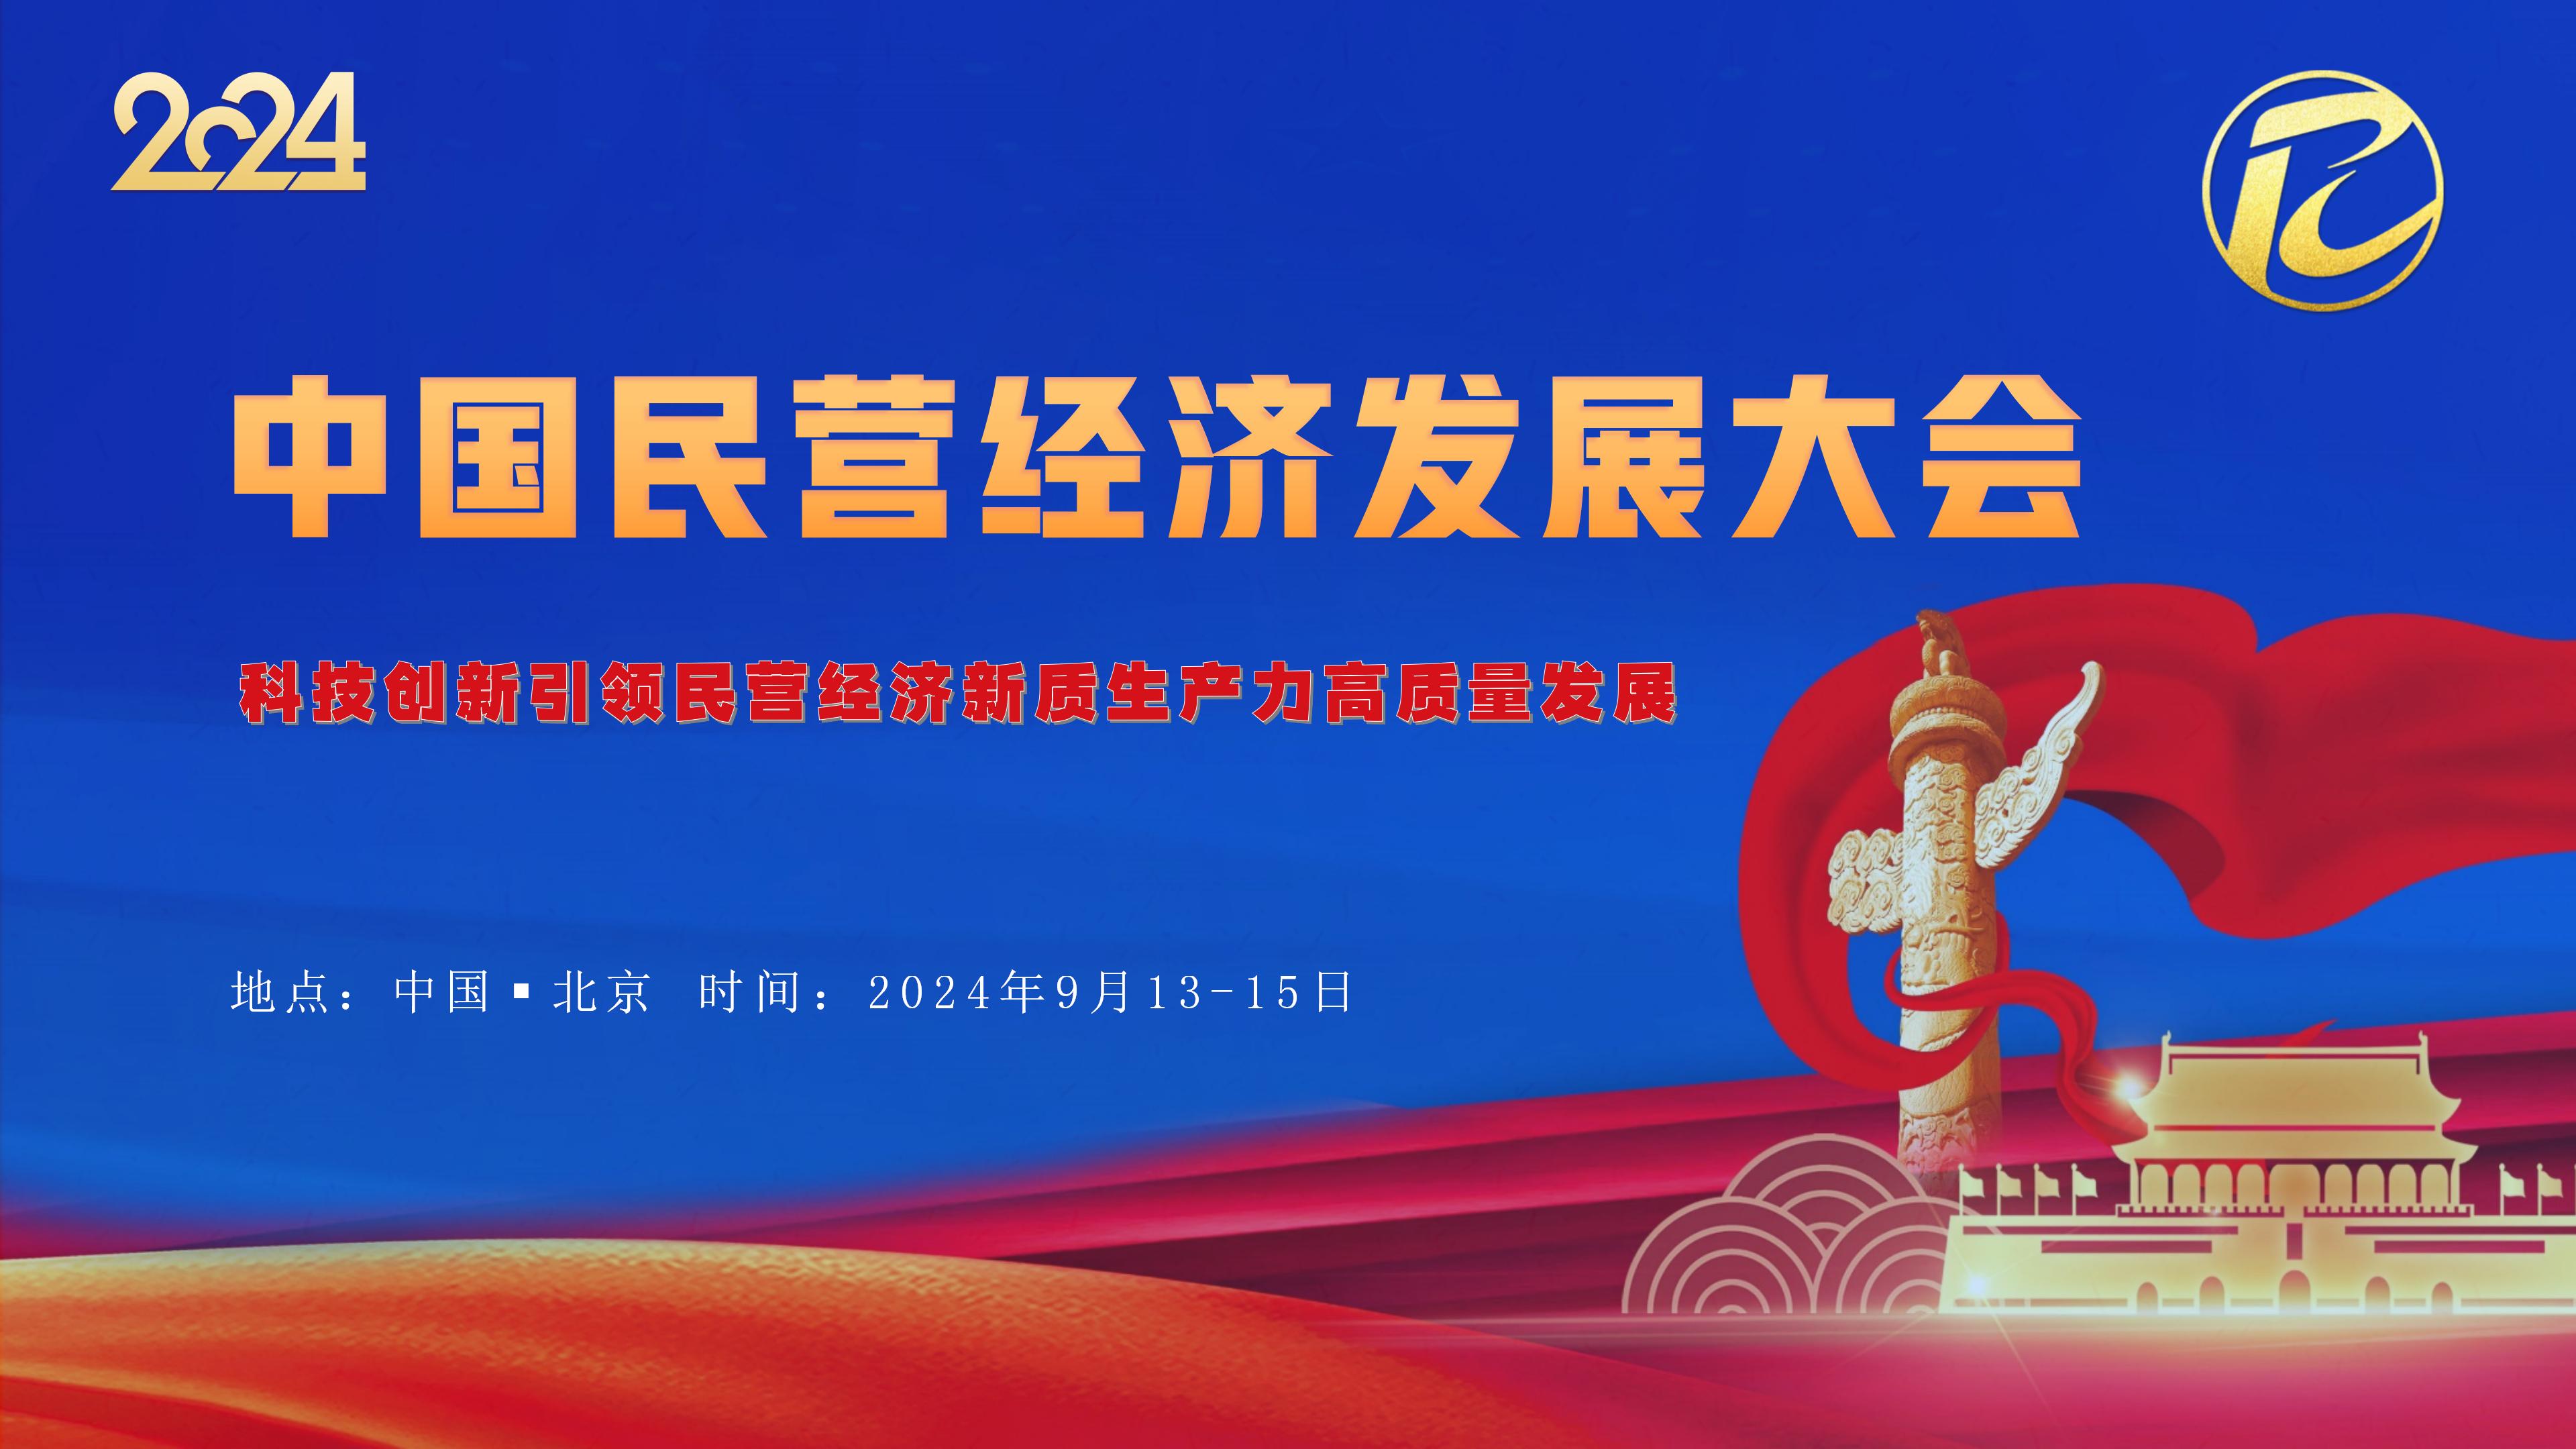 2024中国民营经济发展大会暨亚洲音乐嘉年华将在京举行